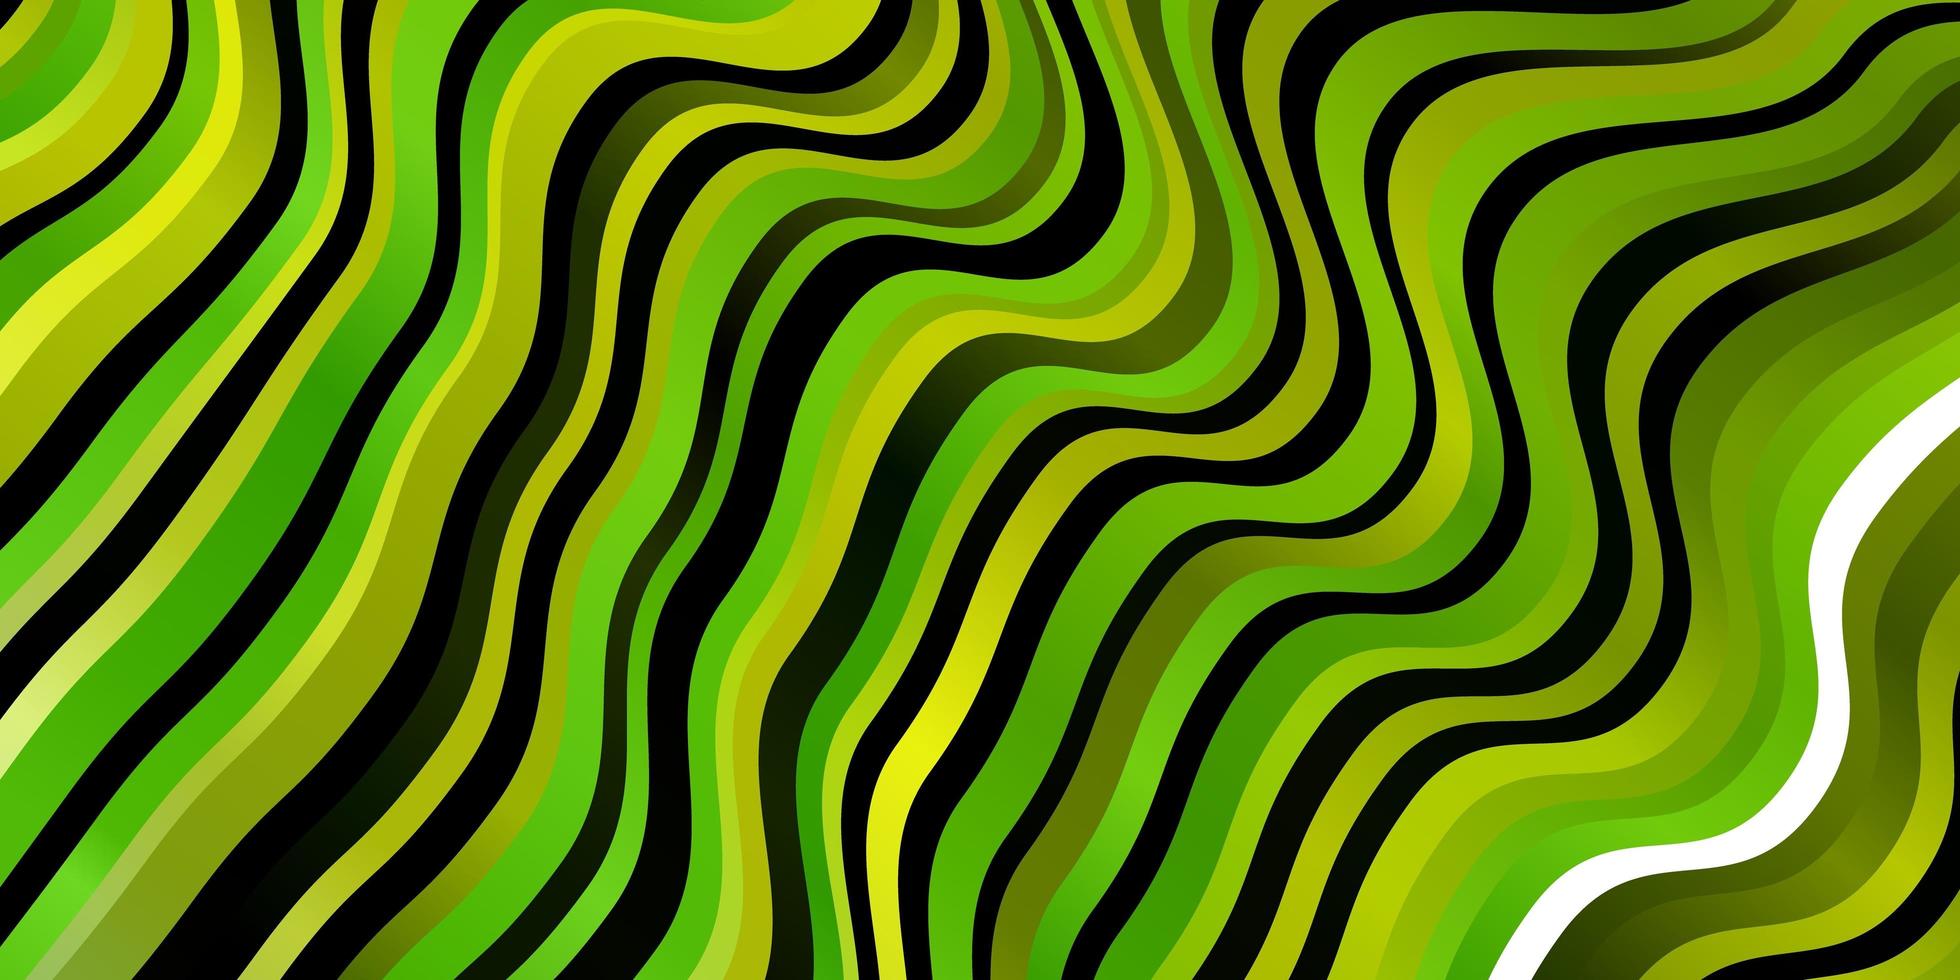 modelo de vetor verde e amarelo claro com linhas.